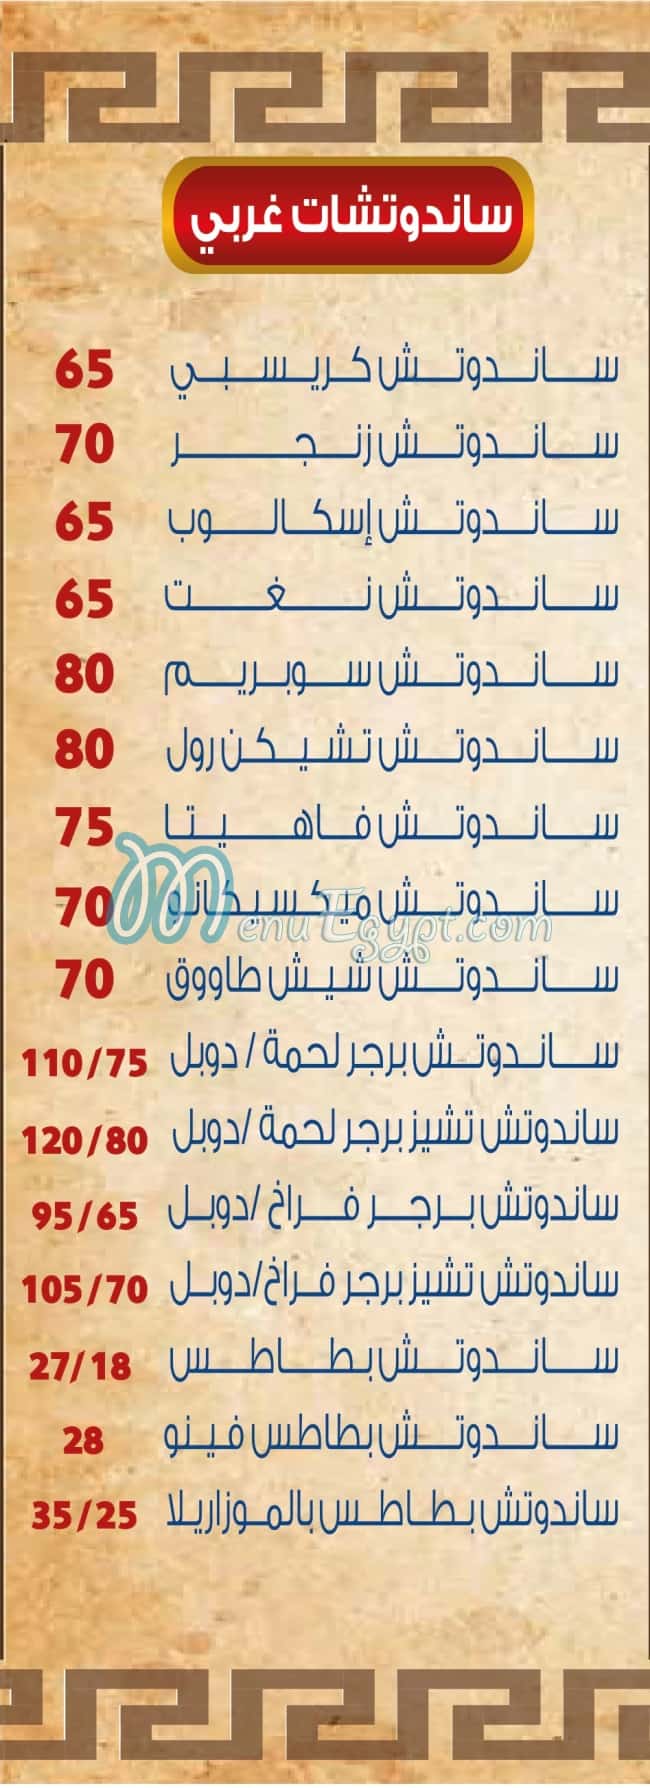 رقم الريف الدمشقي العبور مصر